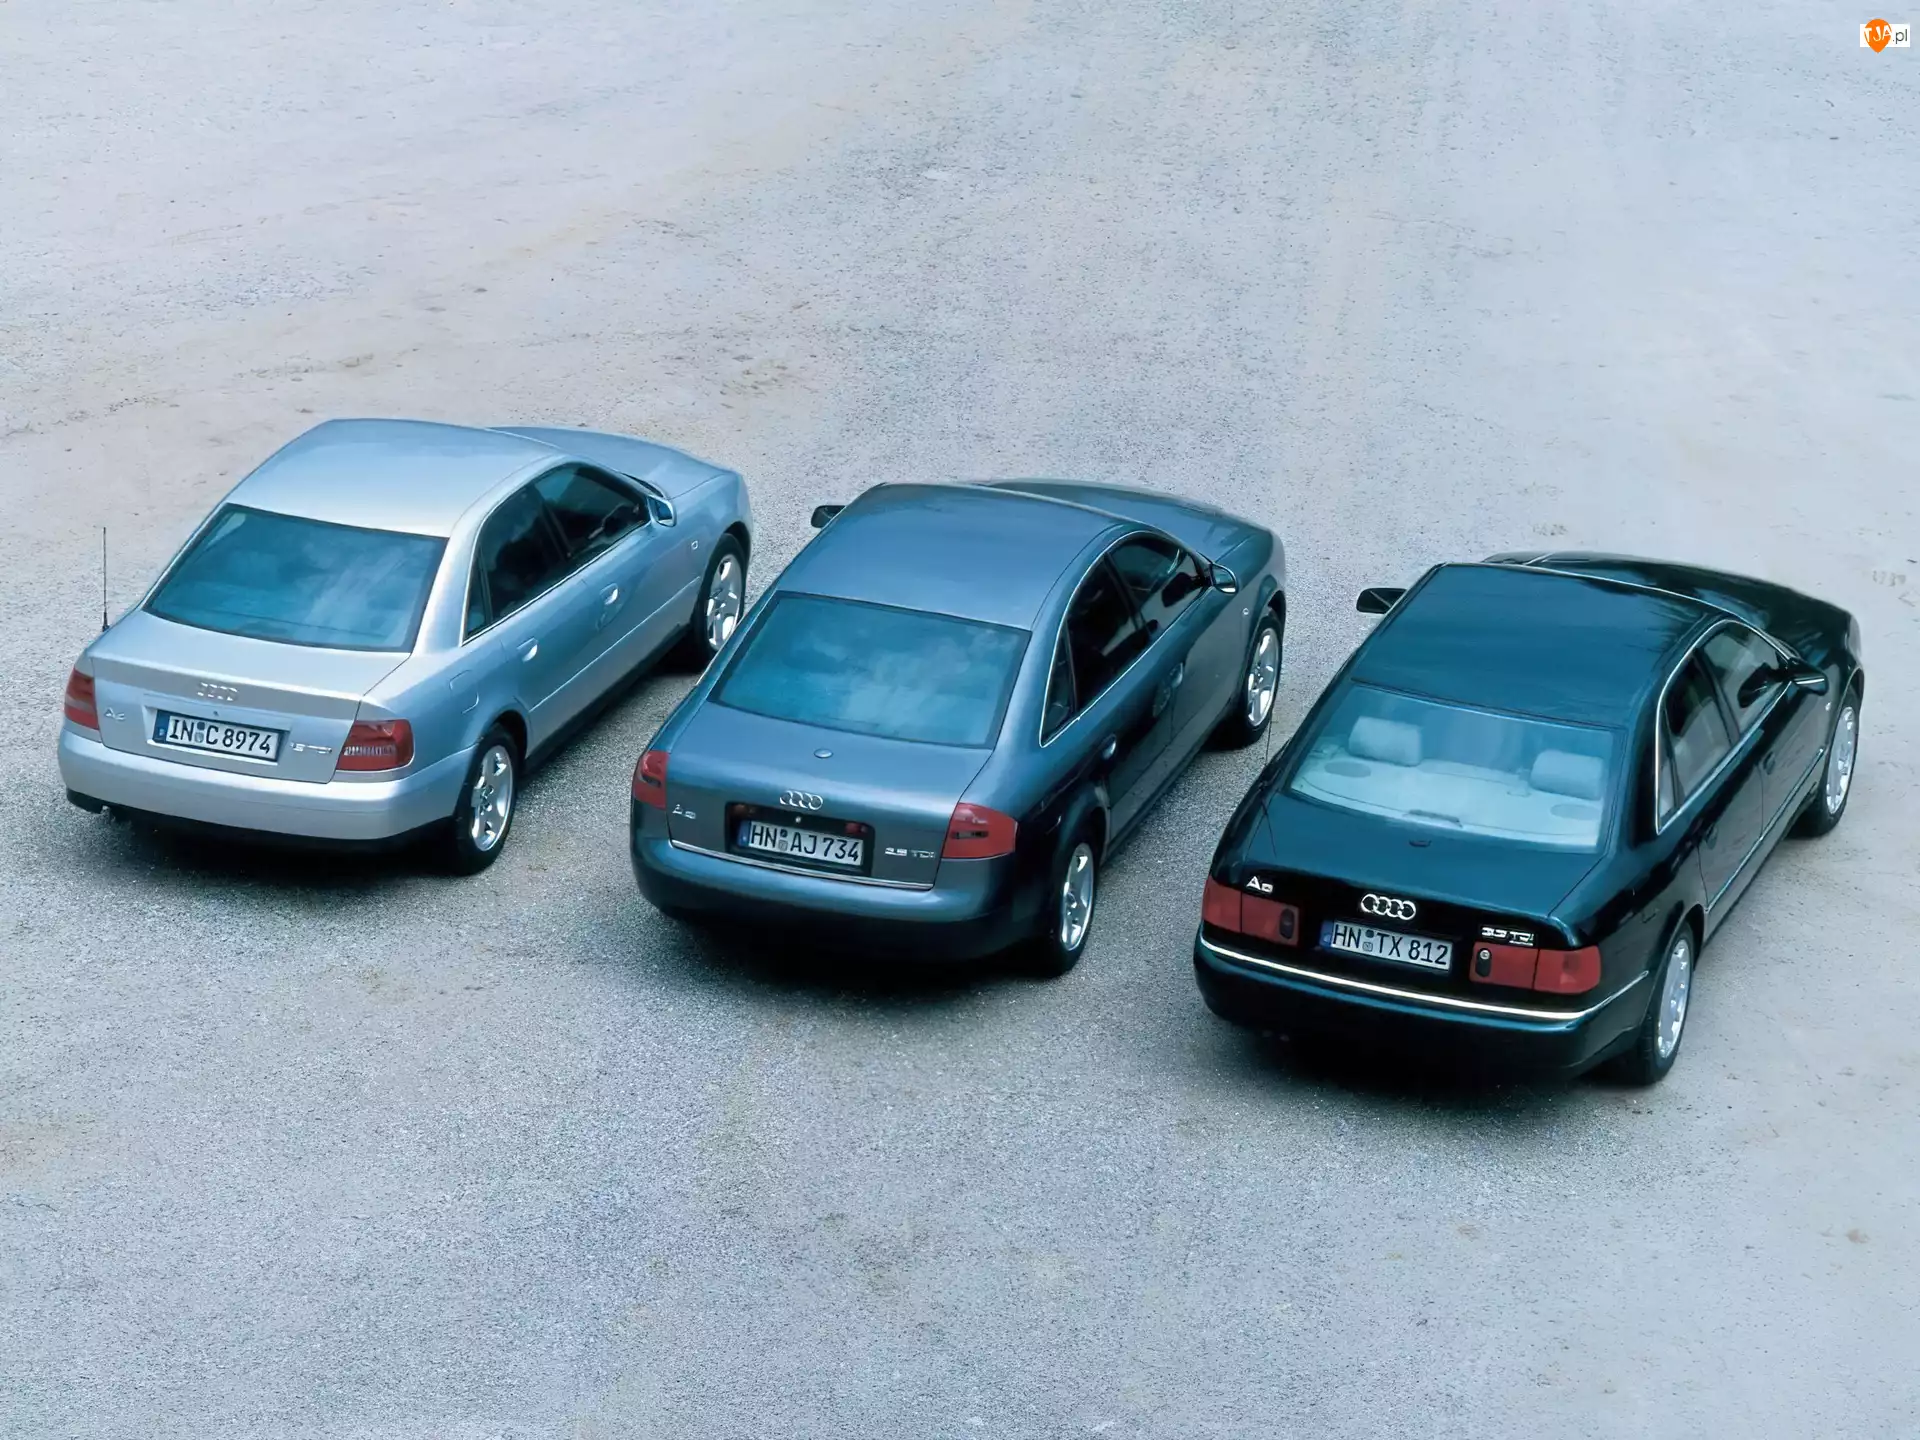 B5, Audi A4, C5, D2, Audi A6, Audi A8